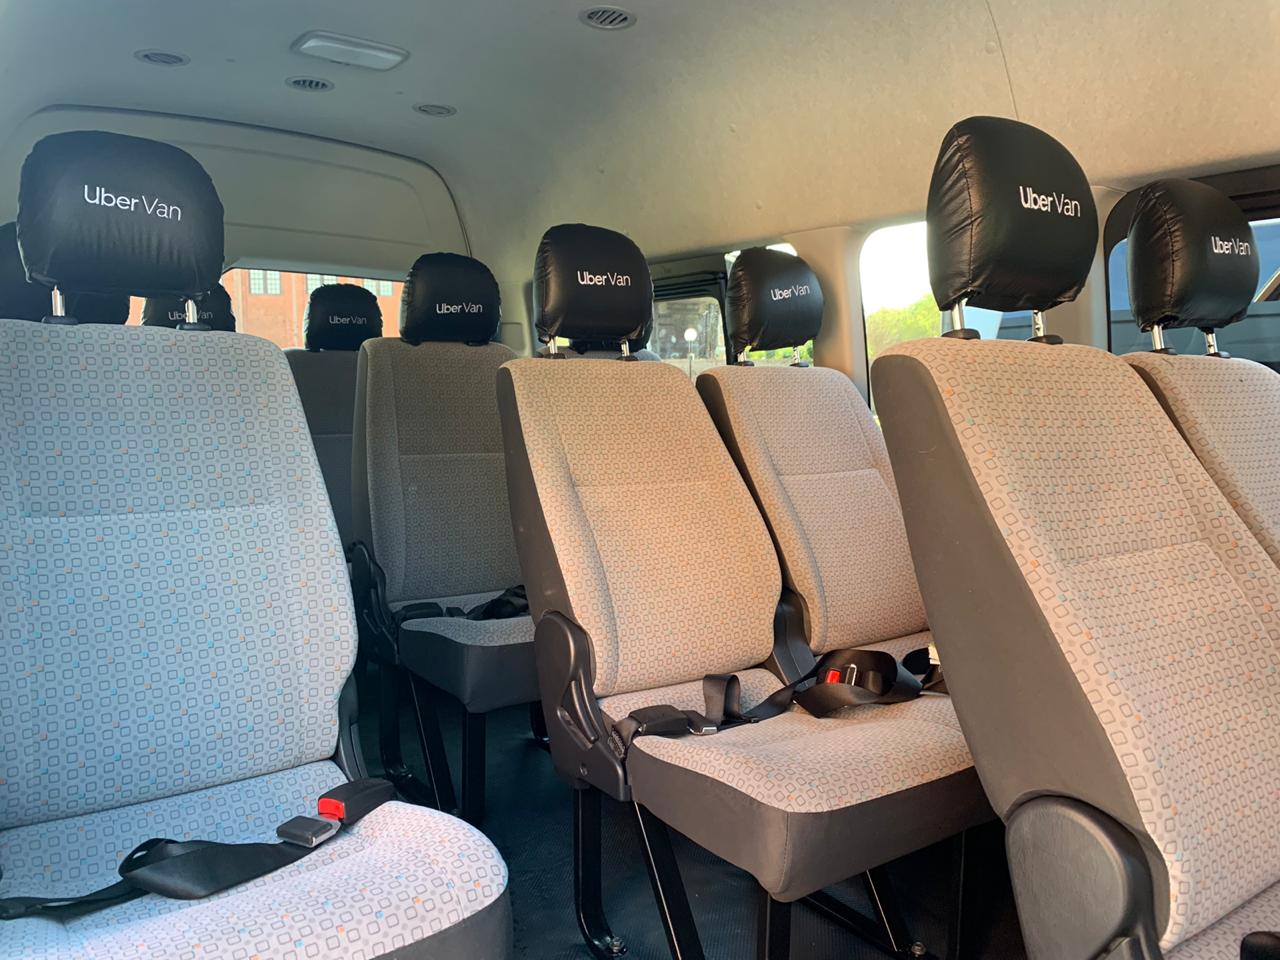 Uber Van llega a Monterrey: El servicio de camionetas de Uber